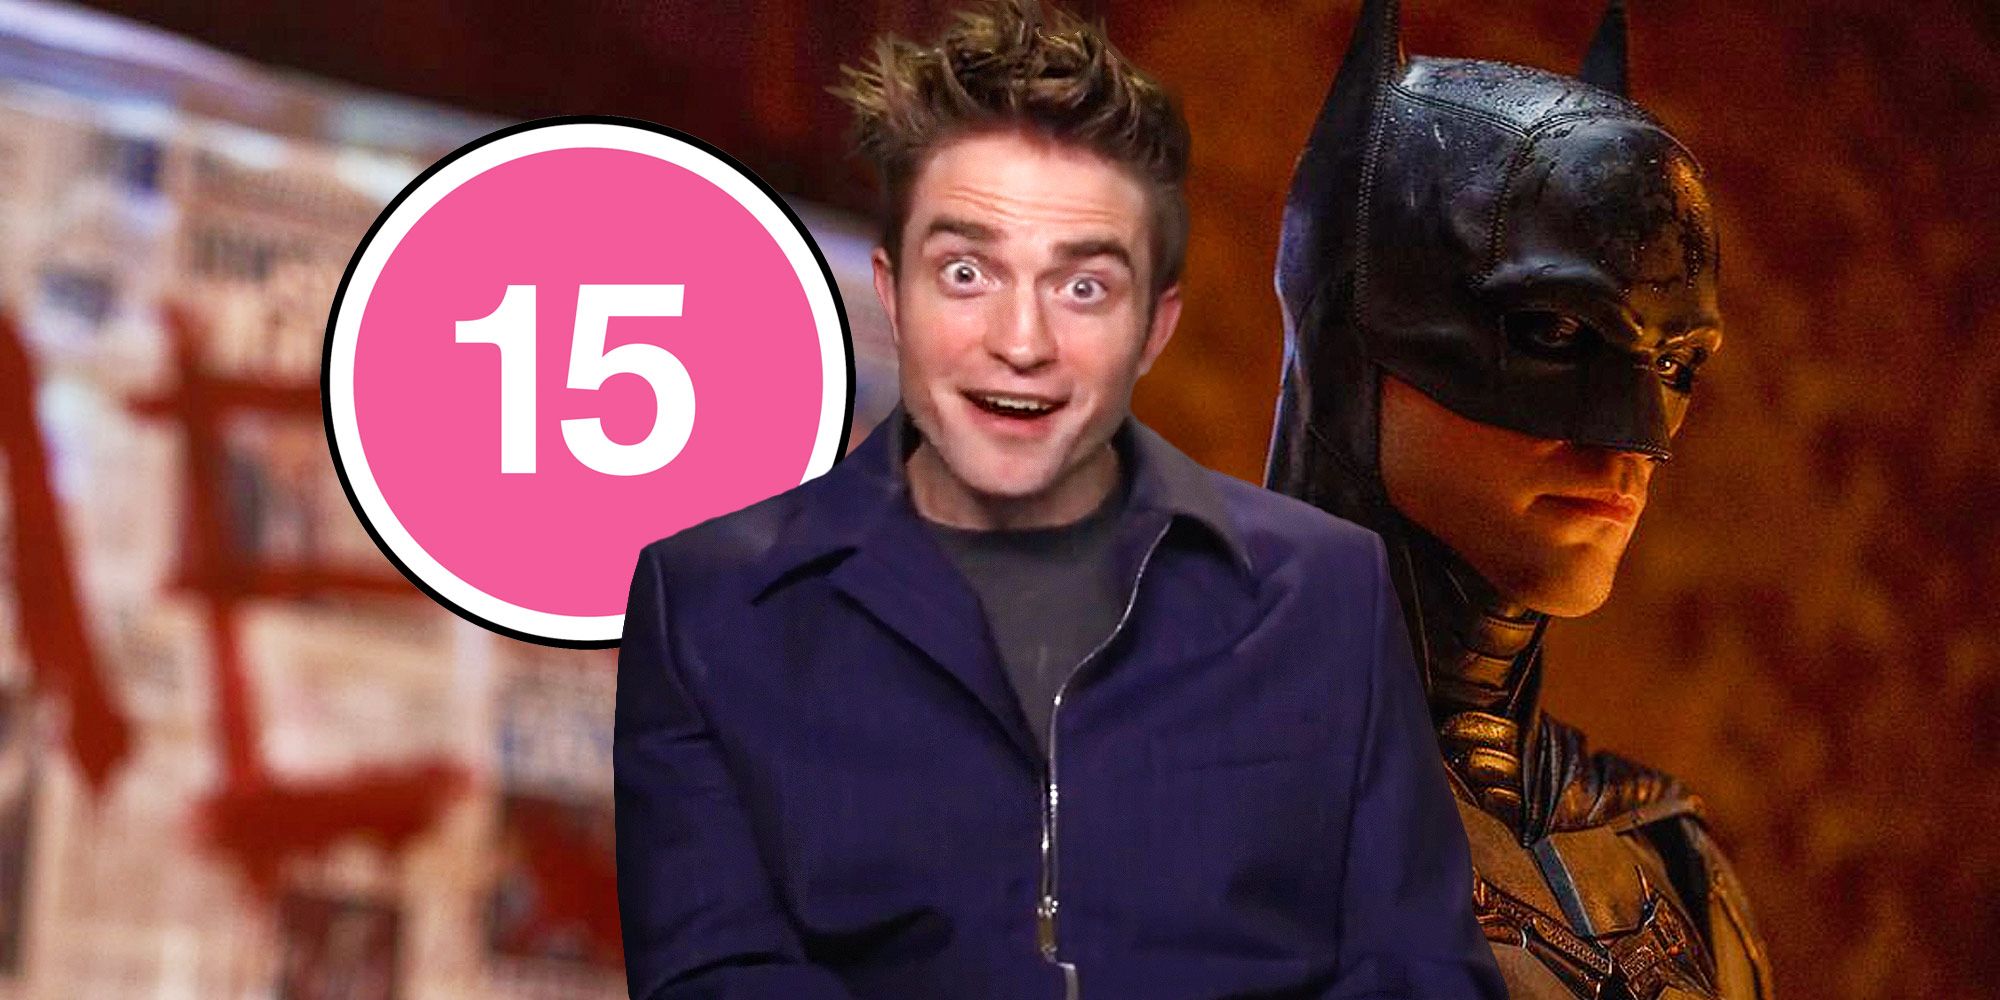 Robert Pattinson reacciona a la clasificación de edad de Batman para mayores de 15 años en el Reino Unido